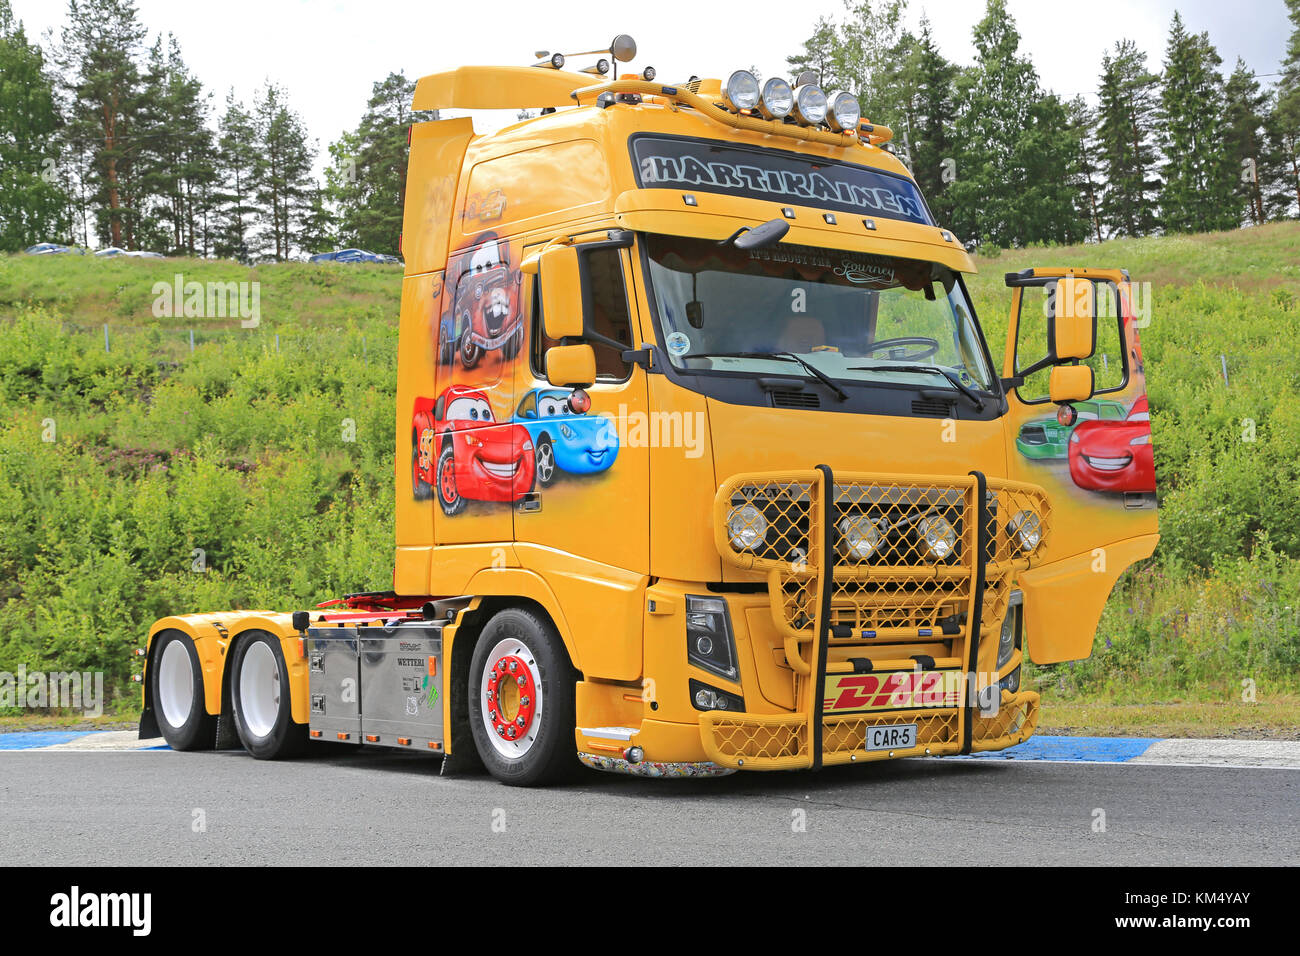 Hameenlinna, Finlandia - Luglio 11, 2015: Volvo fh13 carrello con le vetture film a tema di trans-hartikainen al carrello tawastia weekend 2015. Foto Stock